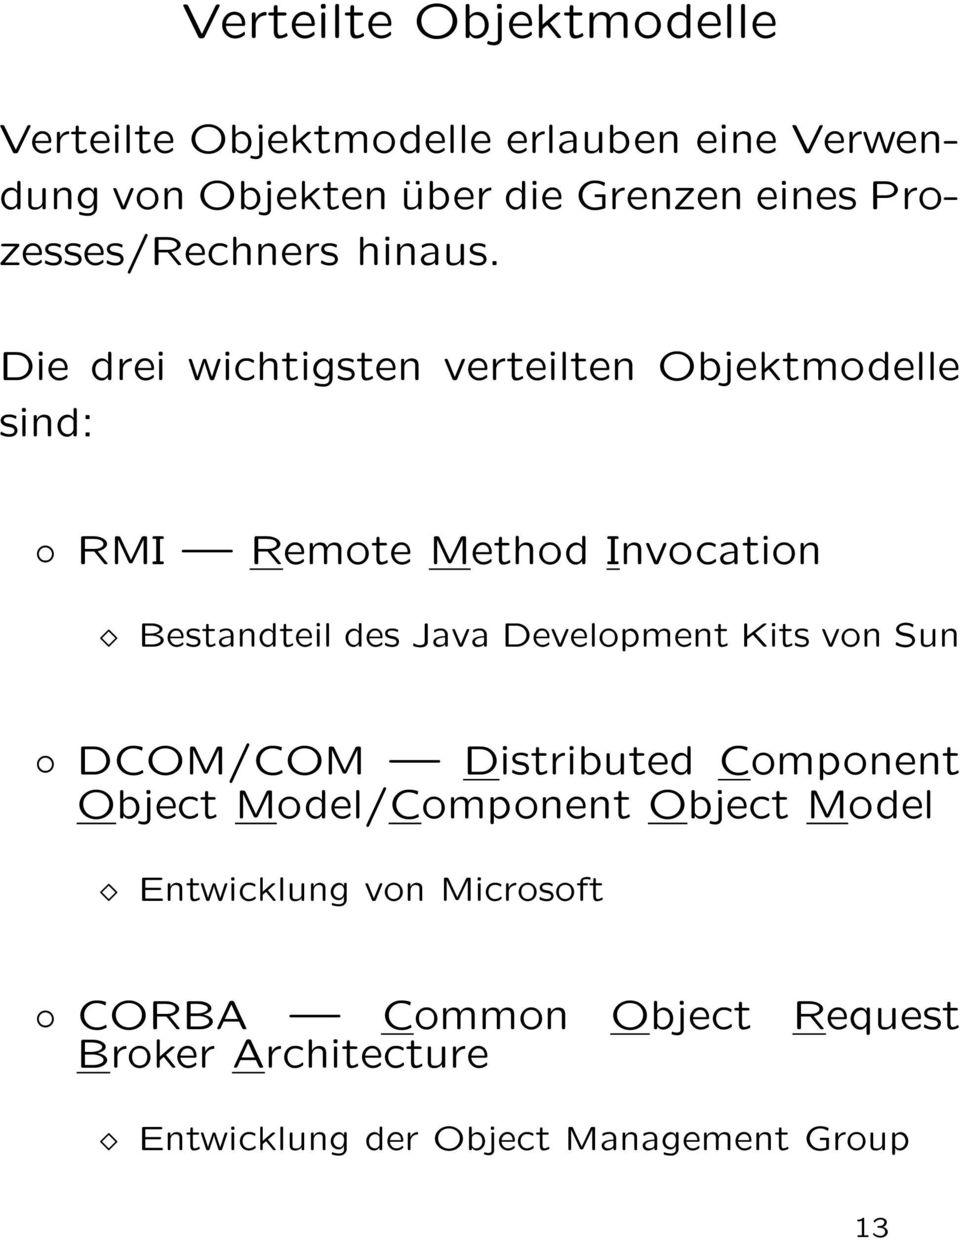 Die drei wichtigsten verteilten Objektmodelle sind: RMI Remote Method Invocation Bestandteil des Java